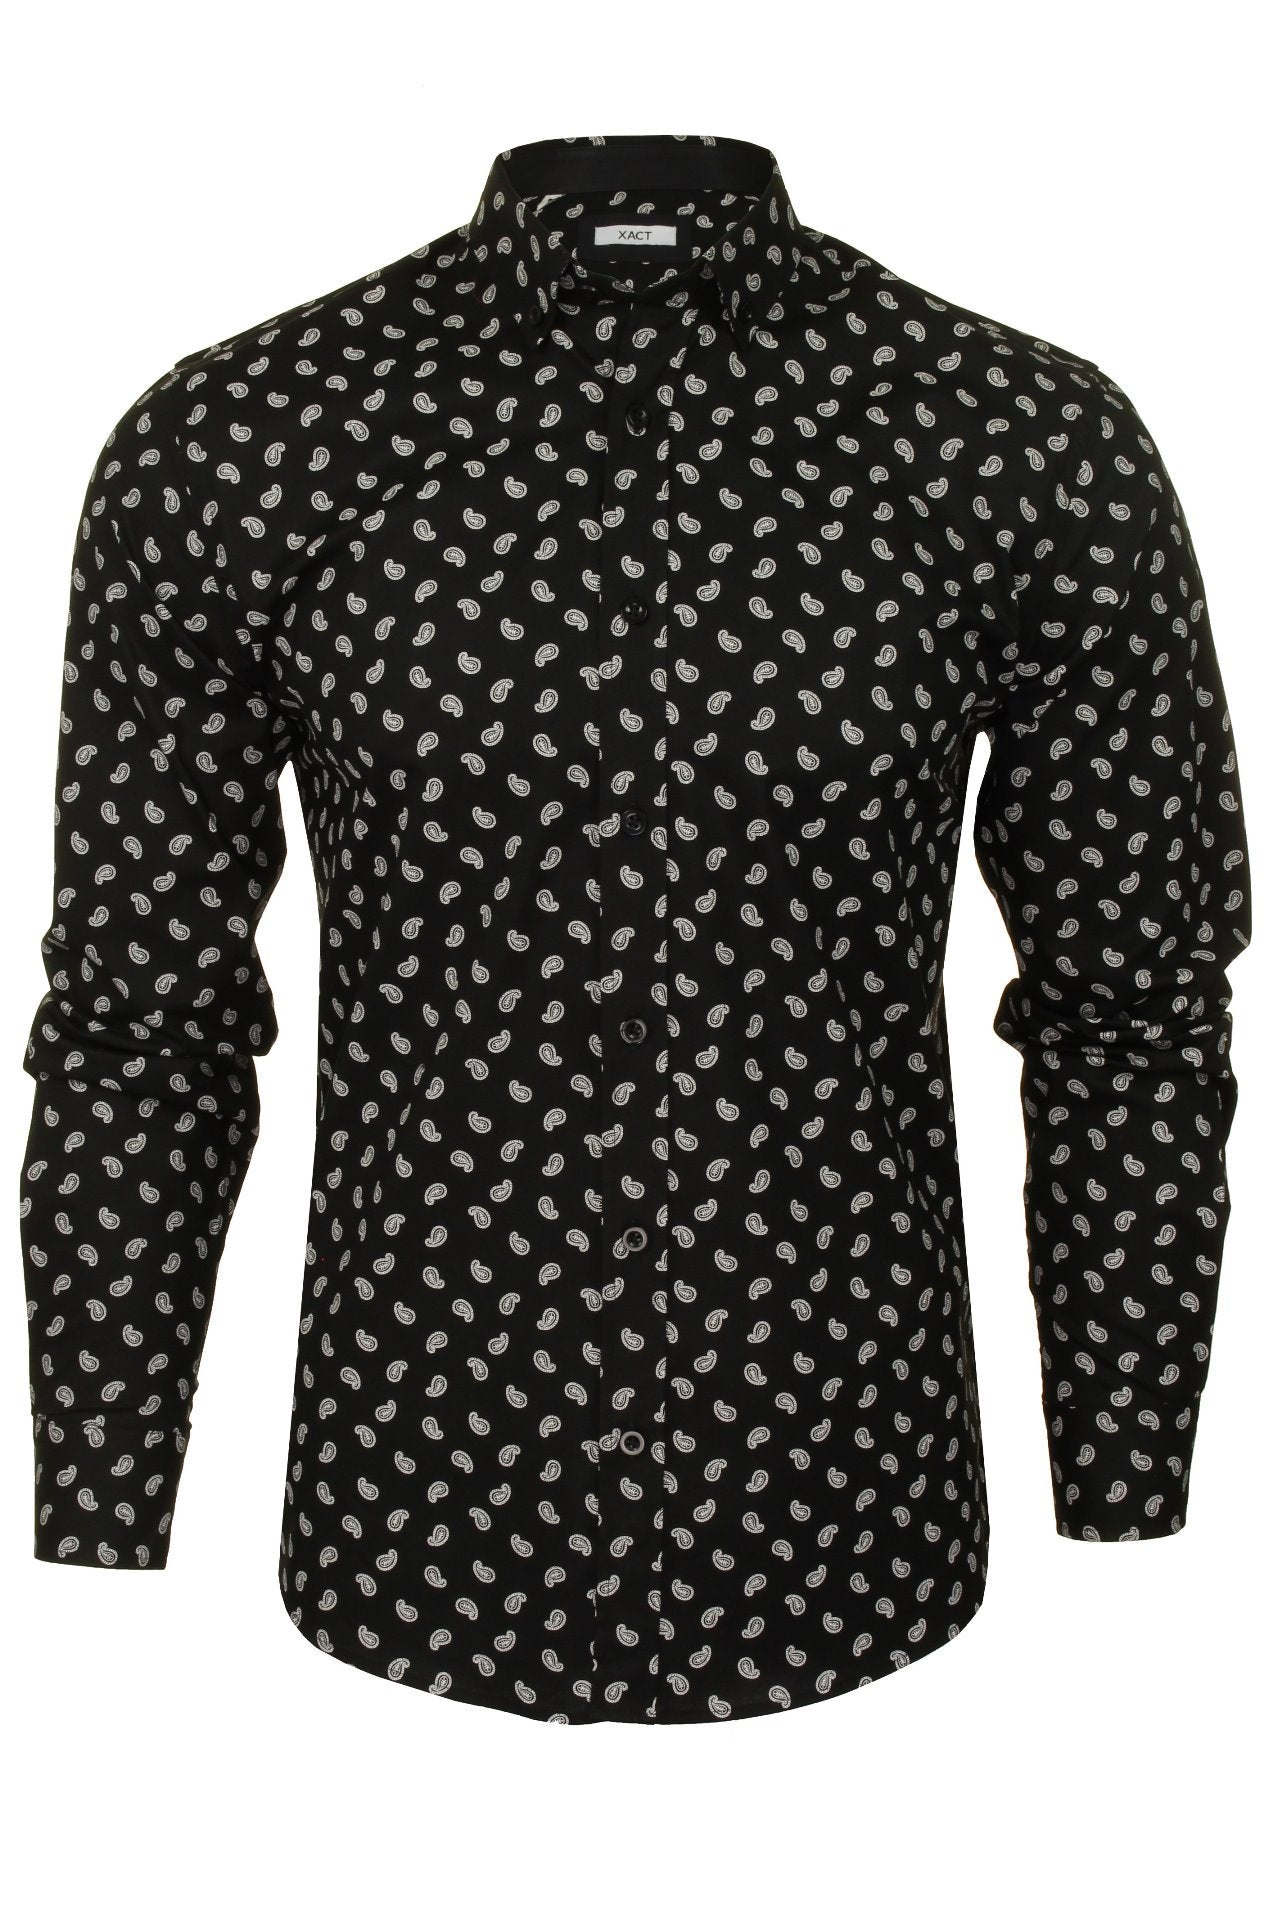 Xact Mens Long Sleeved Paisley Shirt - Slim Fit-Main Image